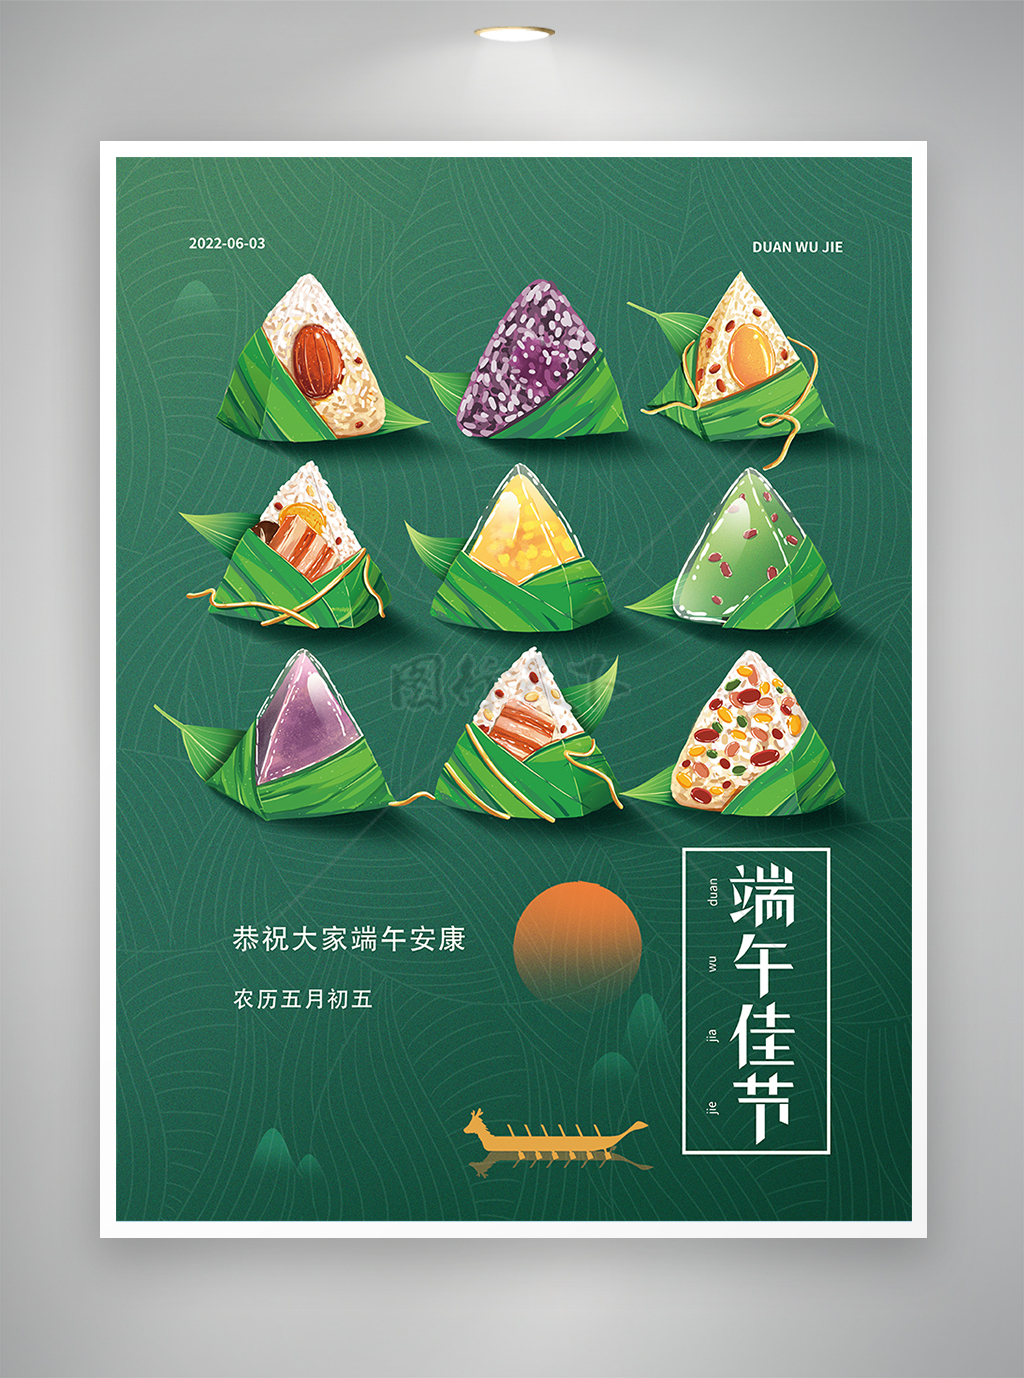 端午节节日宣传手绘粽子海报